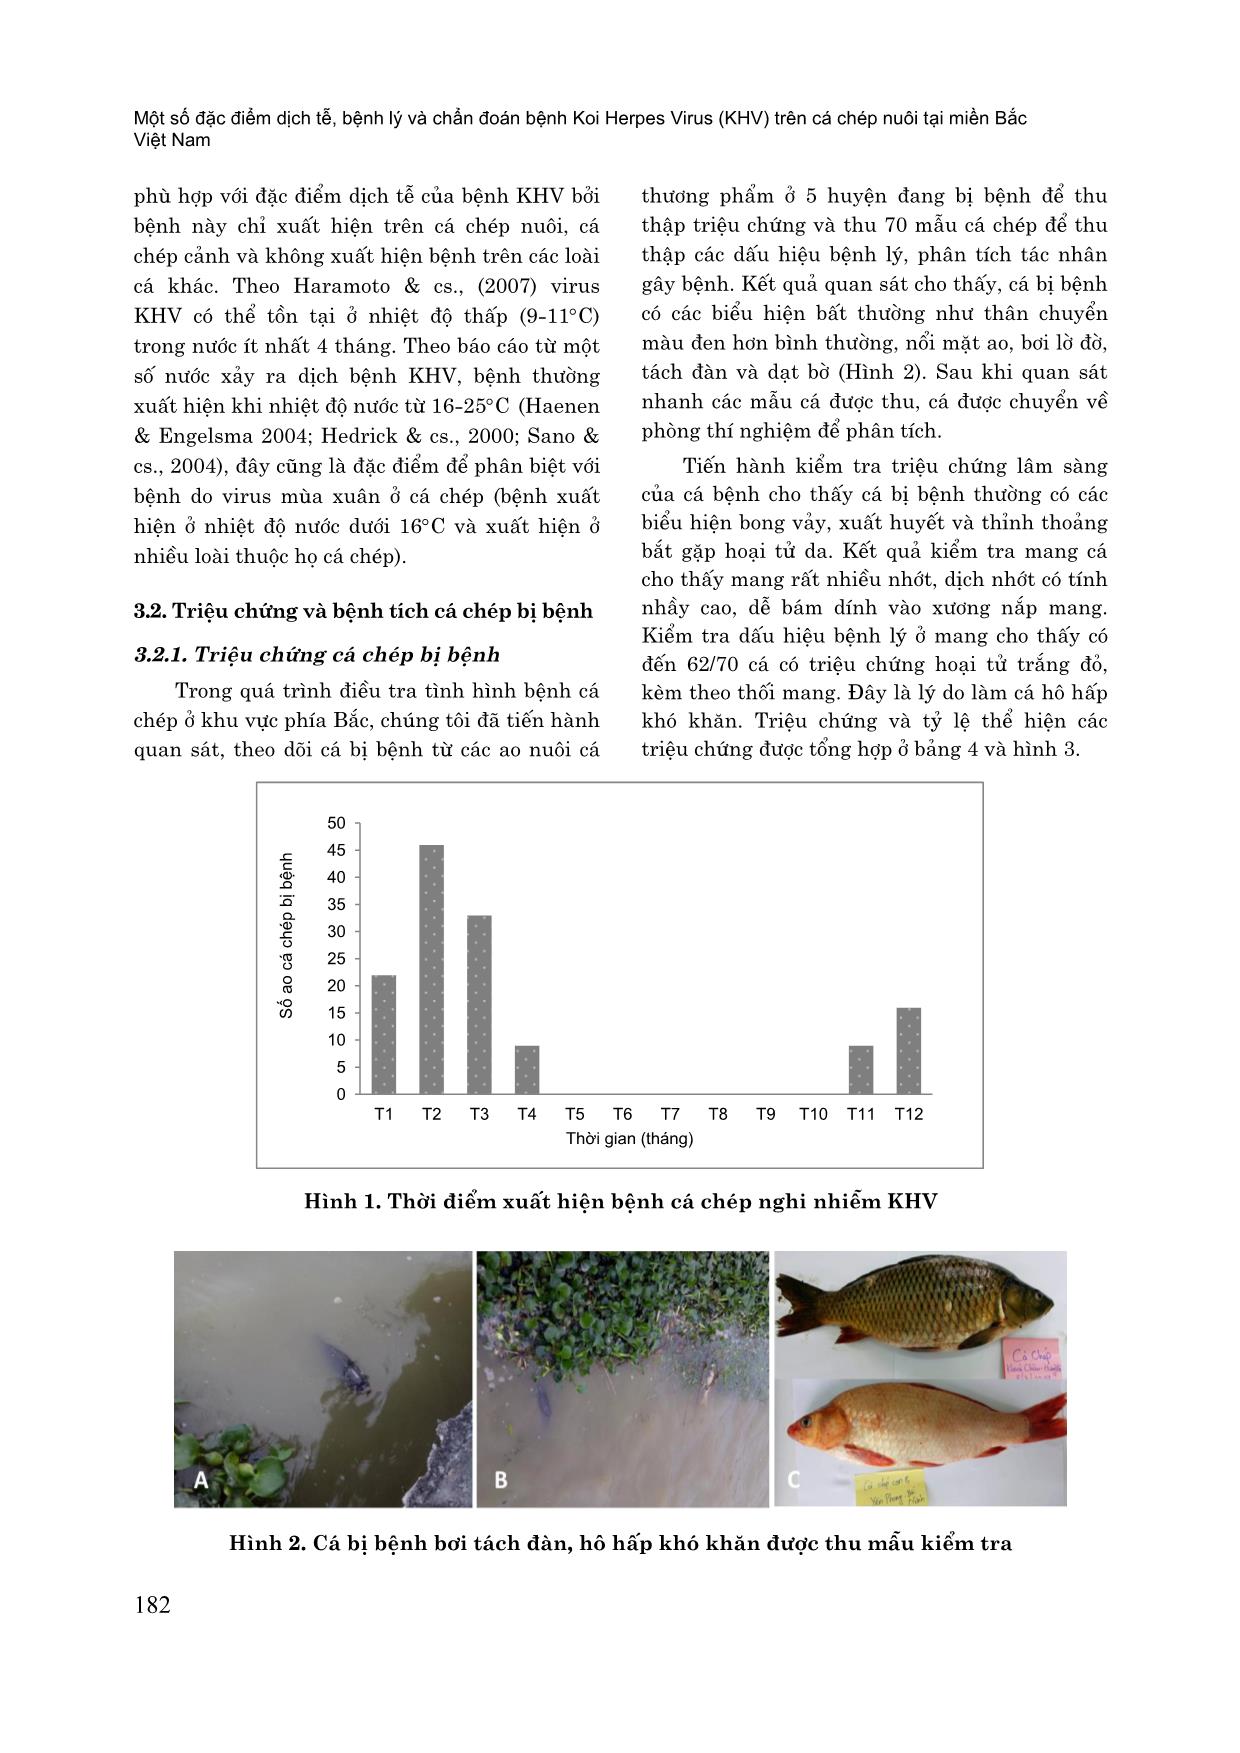 Một số đặc điểm dịch tễ, bệnh lý và chẩn đoán bệnh koi herpes virus (KHV) trên cá chép nuôi tại miền Bắc Việt Nam trang 5